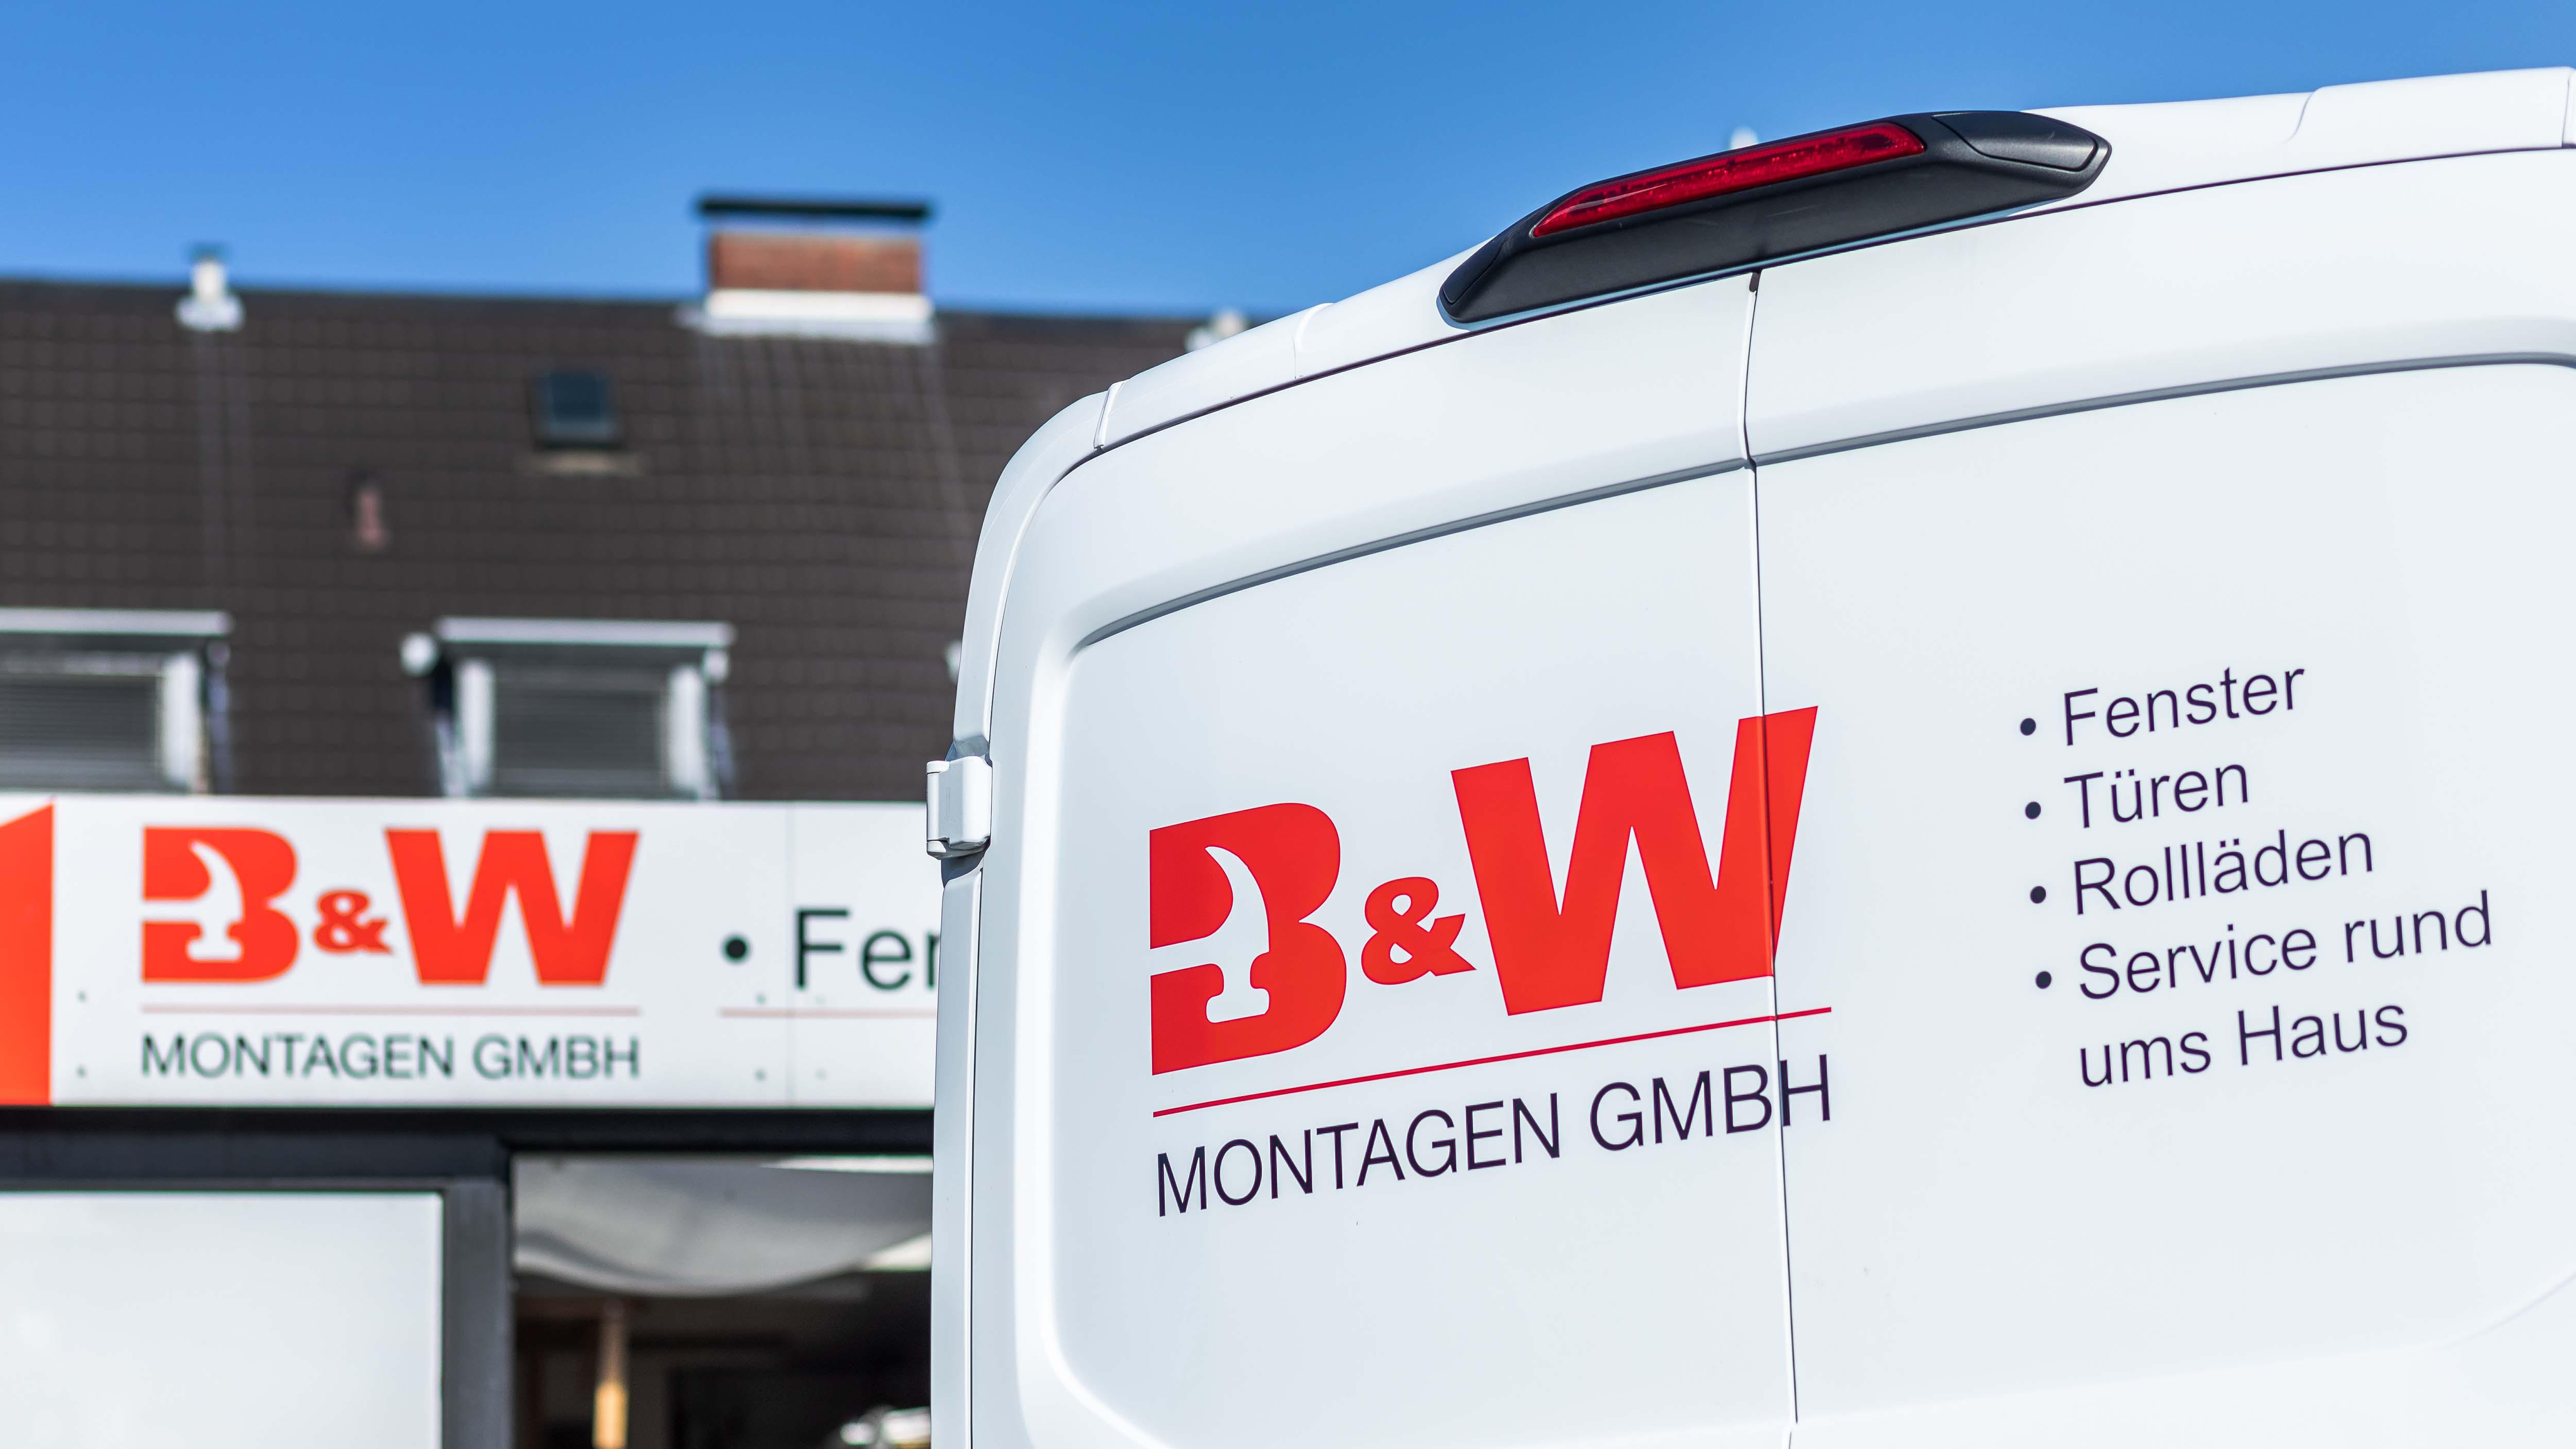 B&W Montagen GmbH